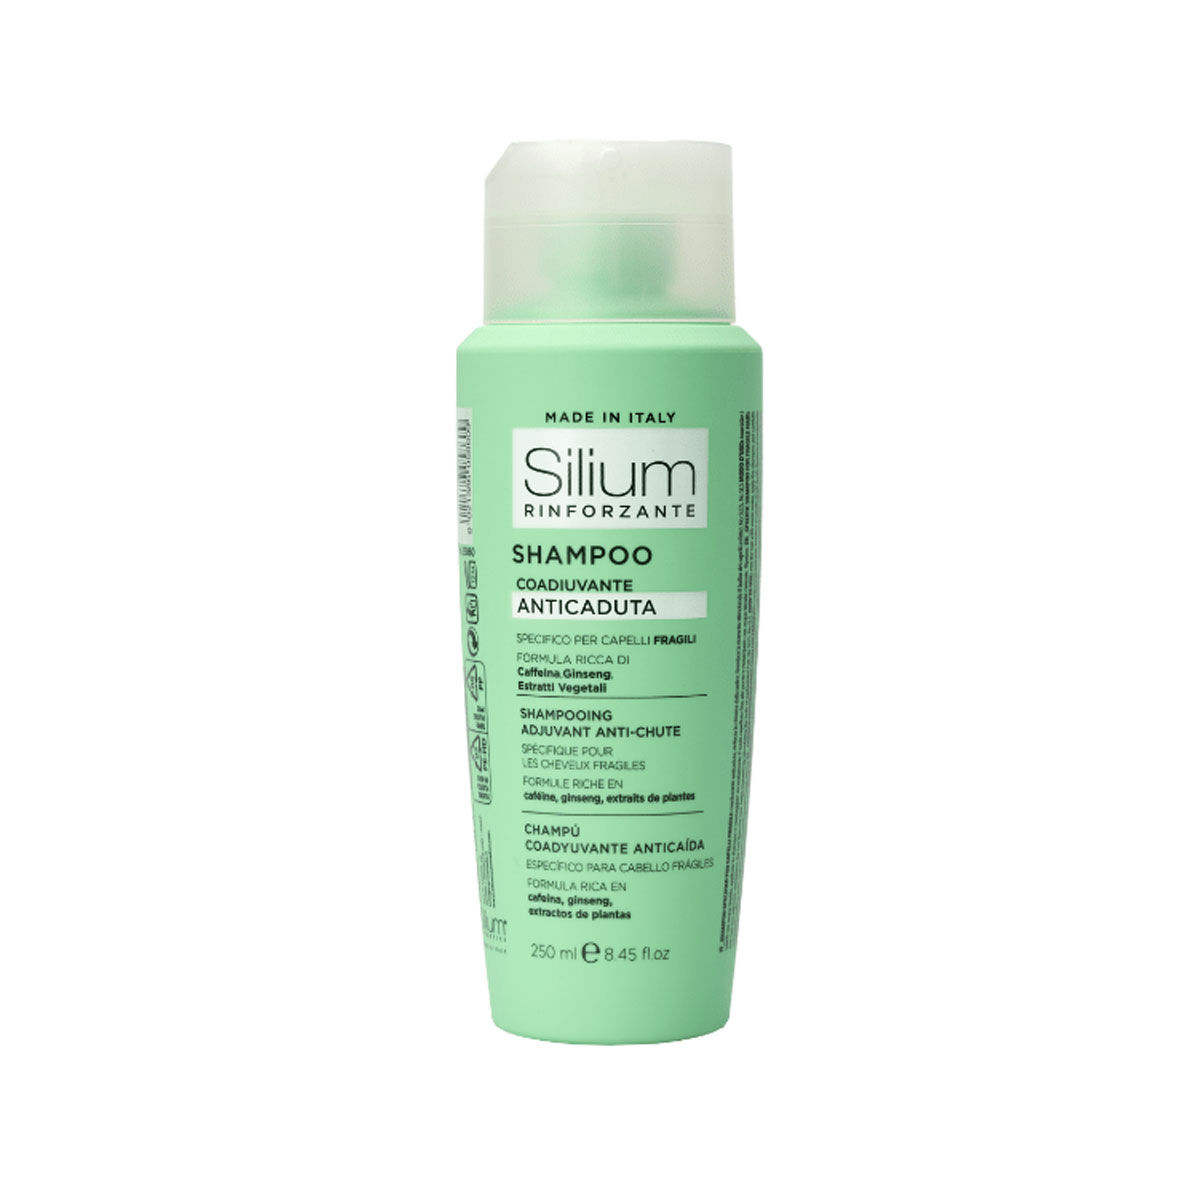 Silium Shampoo Coadiuvante Anticaduta 250ml